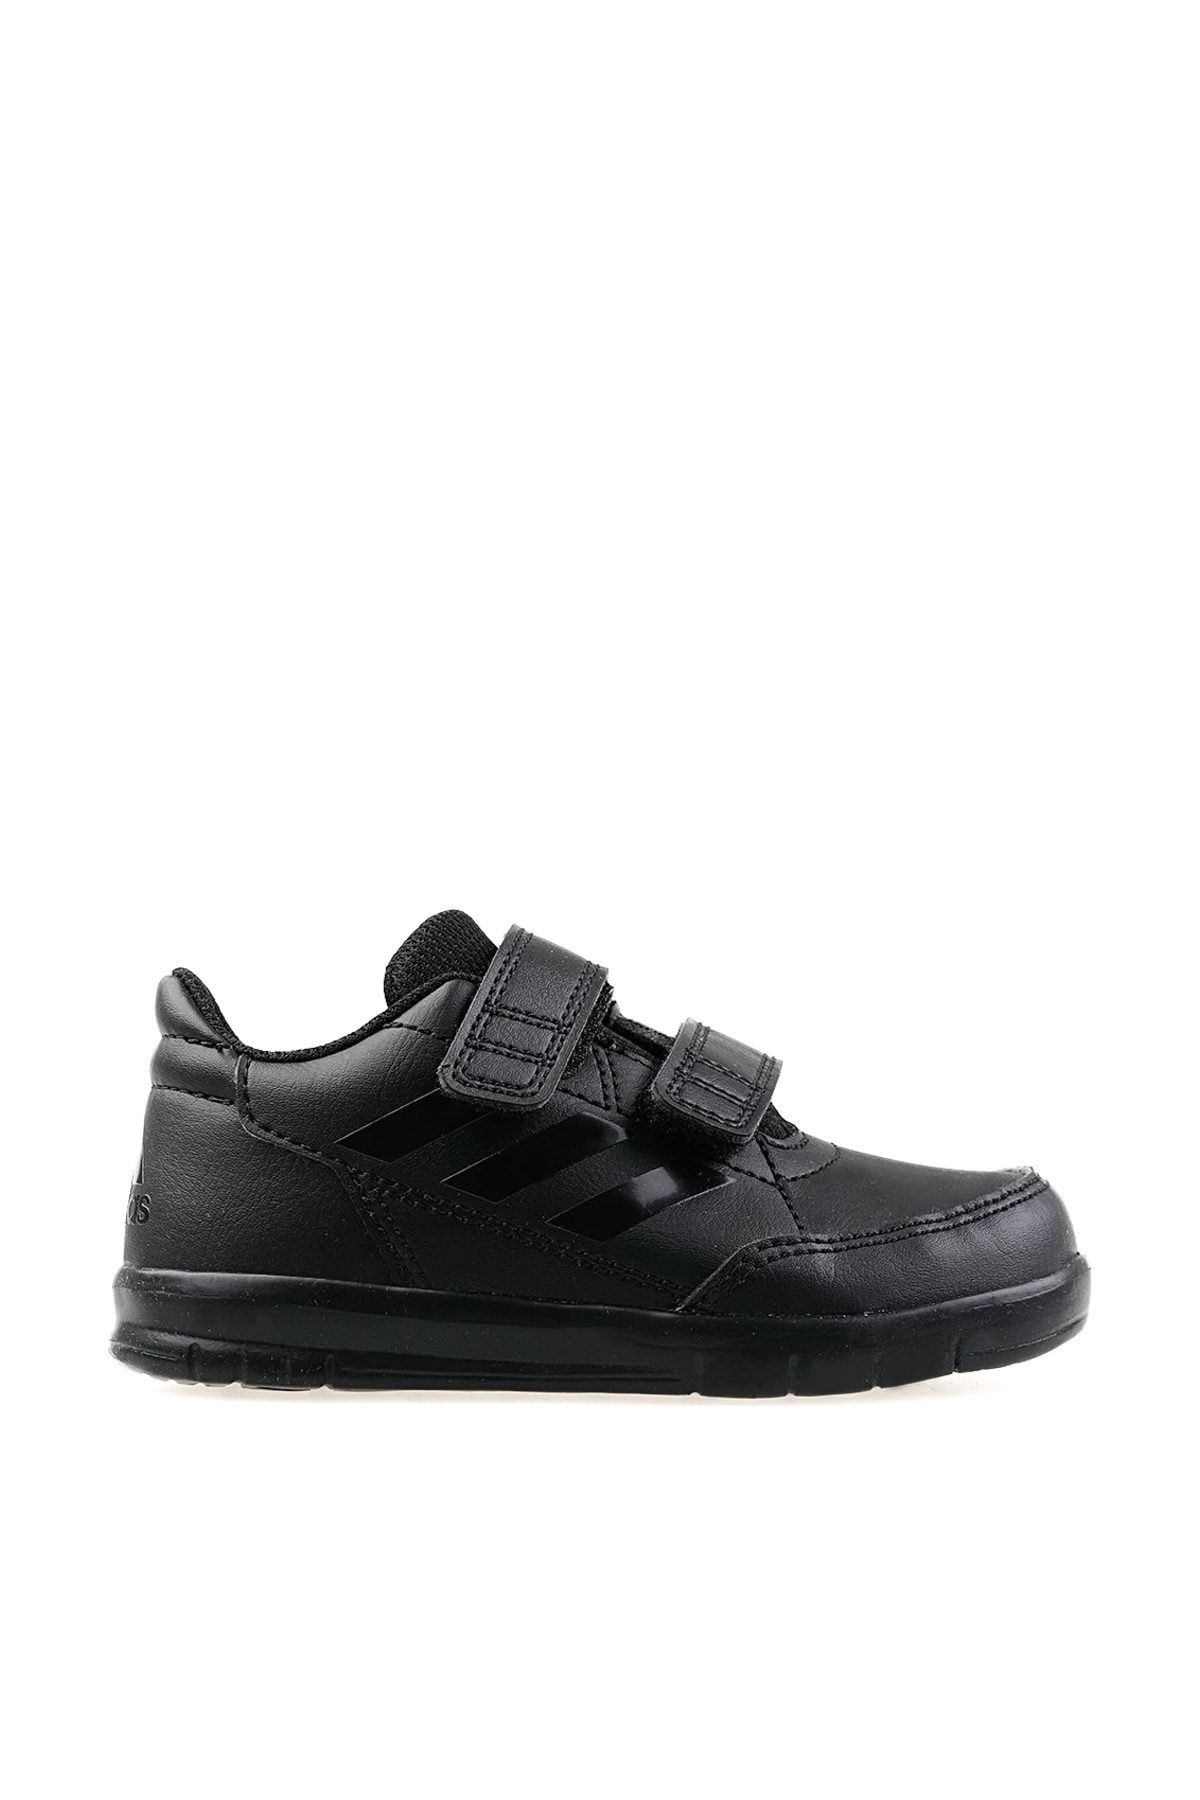 adidas ALTASPORT CF I Siyah Erkek Çocuk Sneaker Ayakkabı 101117530